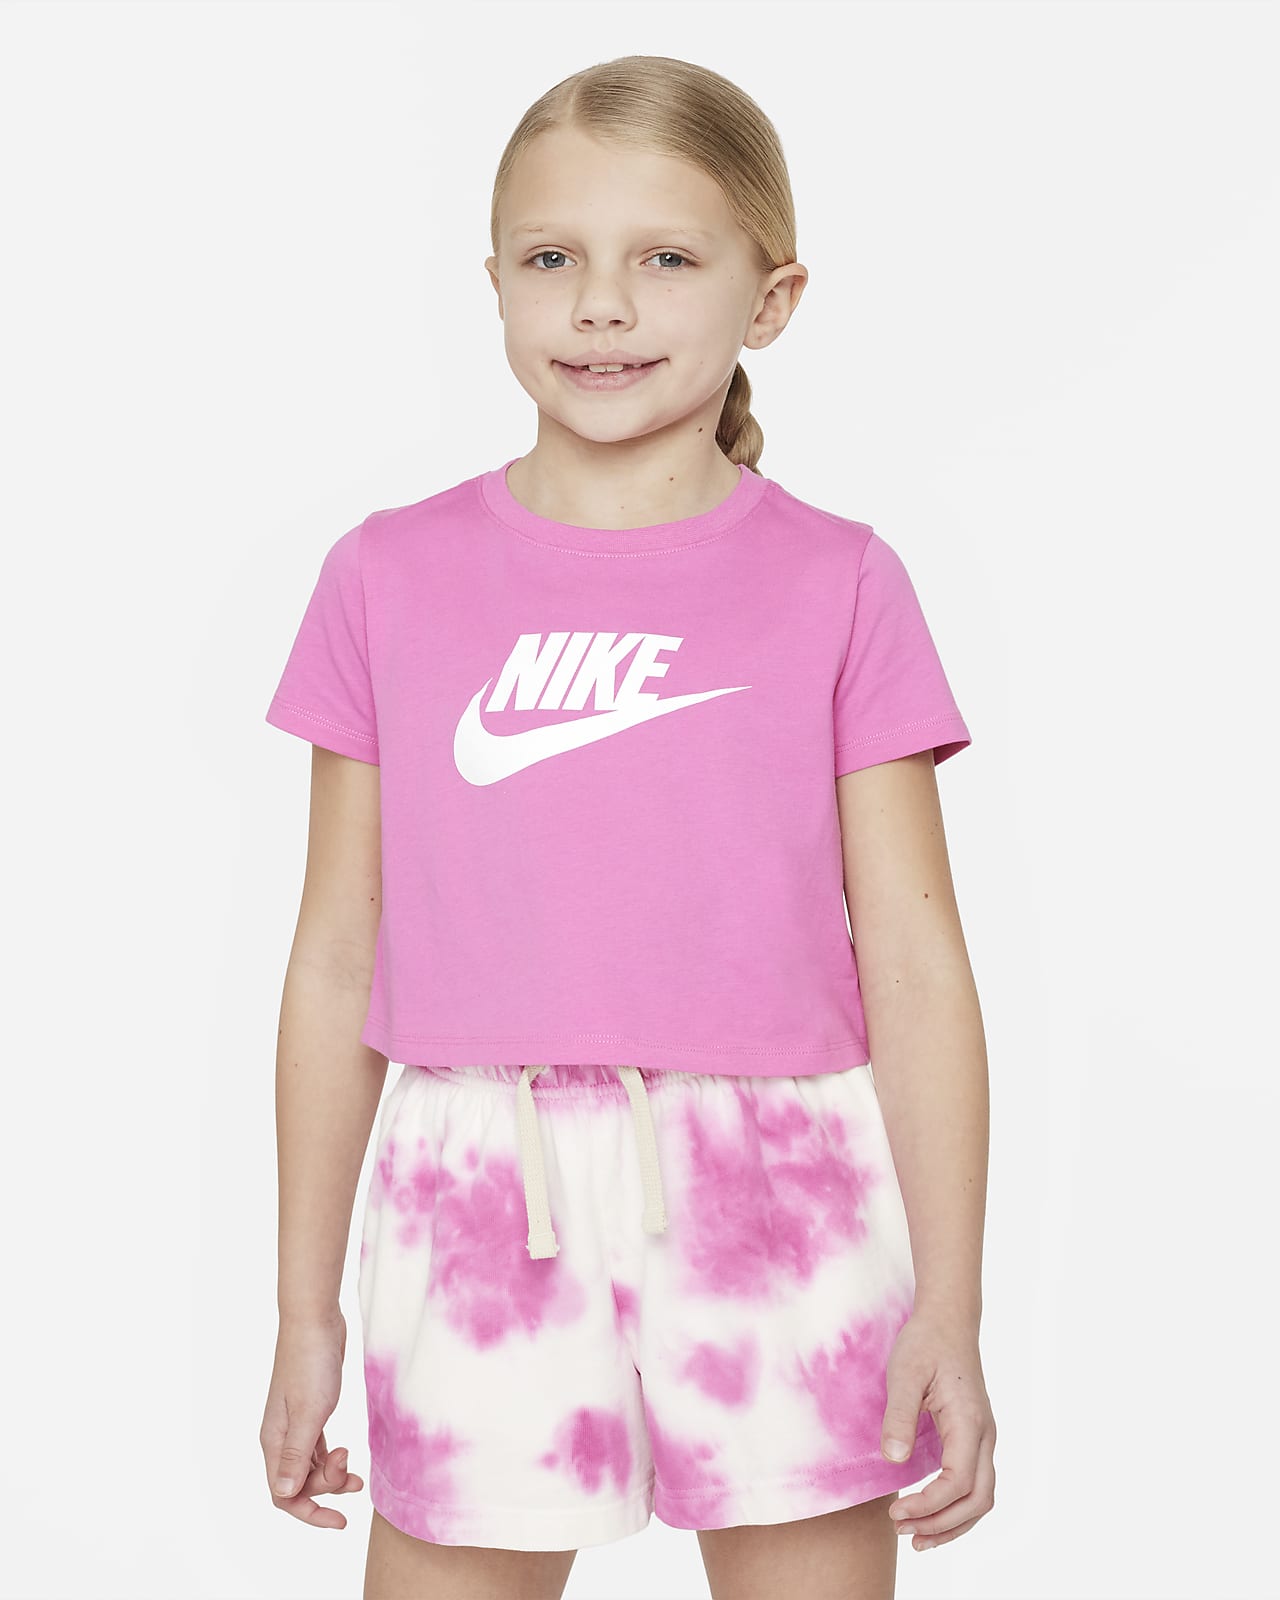 Women's Pink Tops & T-Shirts. Nike AU